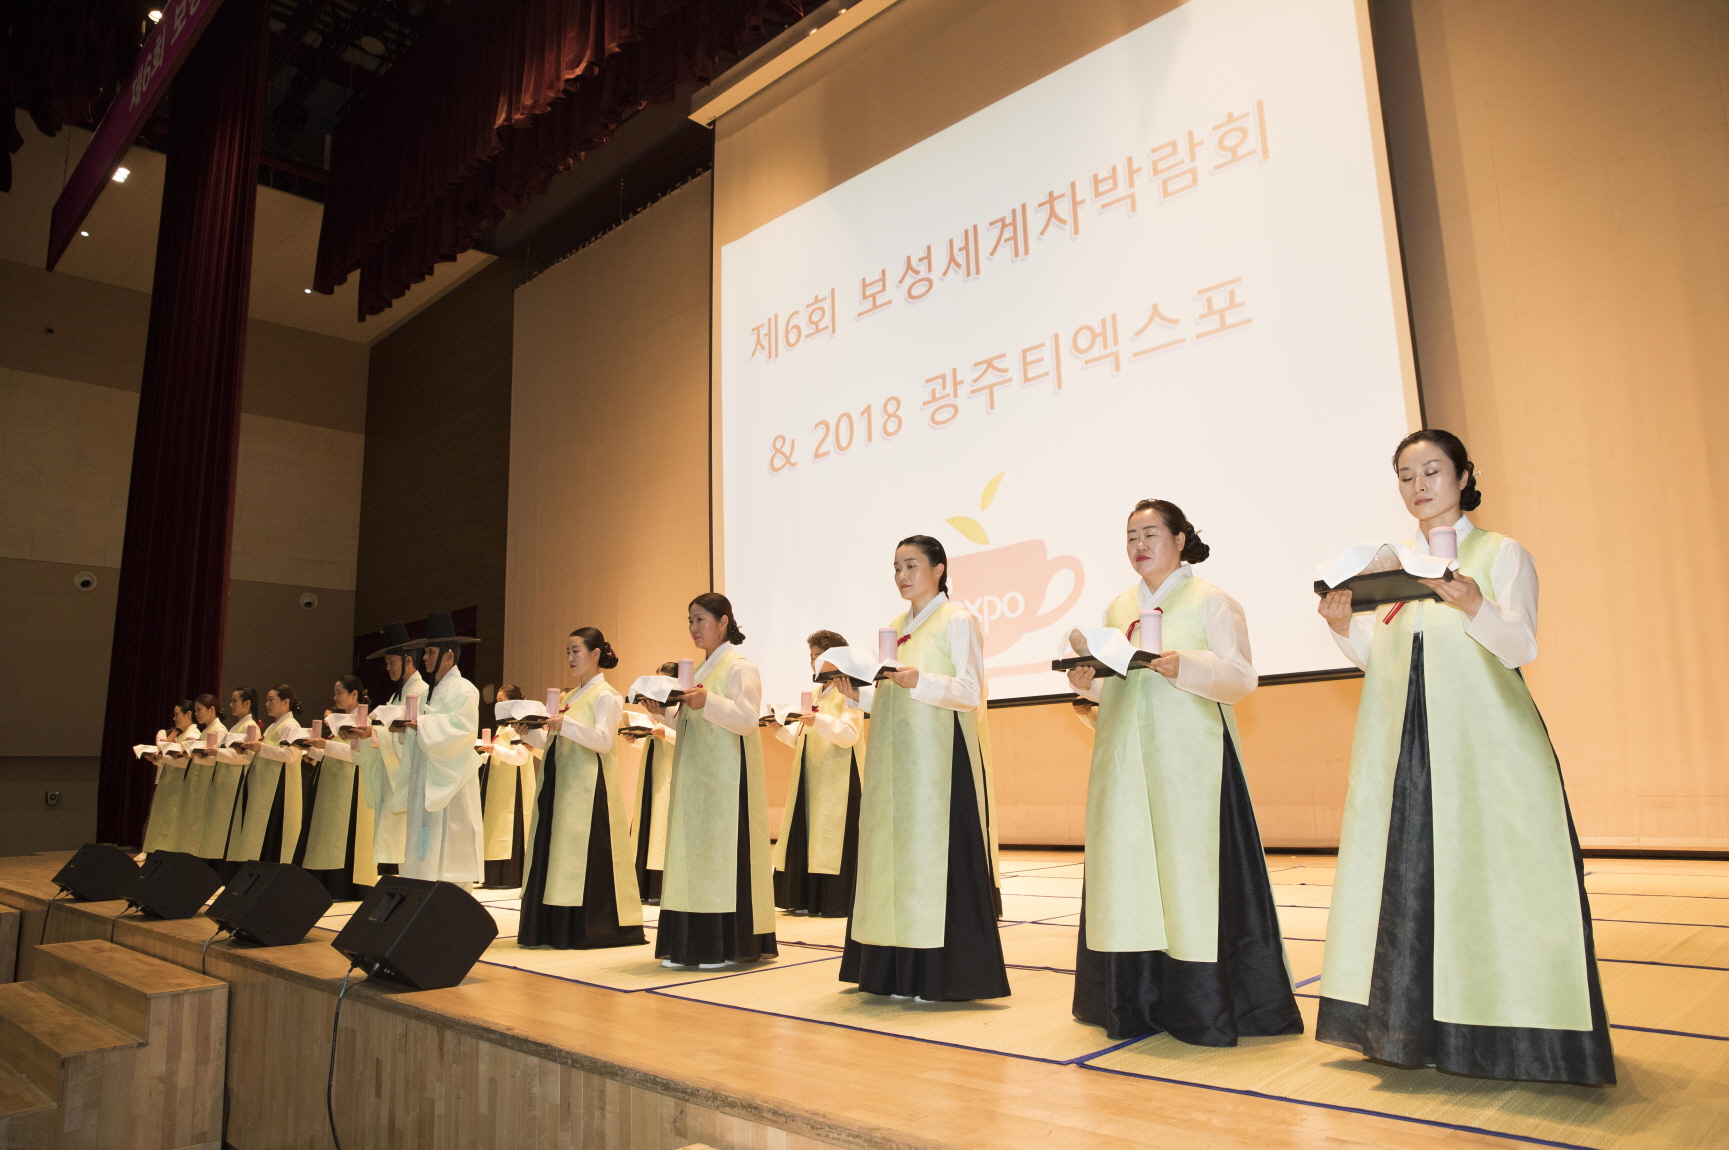 제6회 보성세계차박람회&2018 광주티엑스포 참여(1)